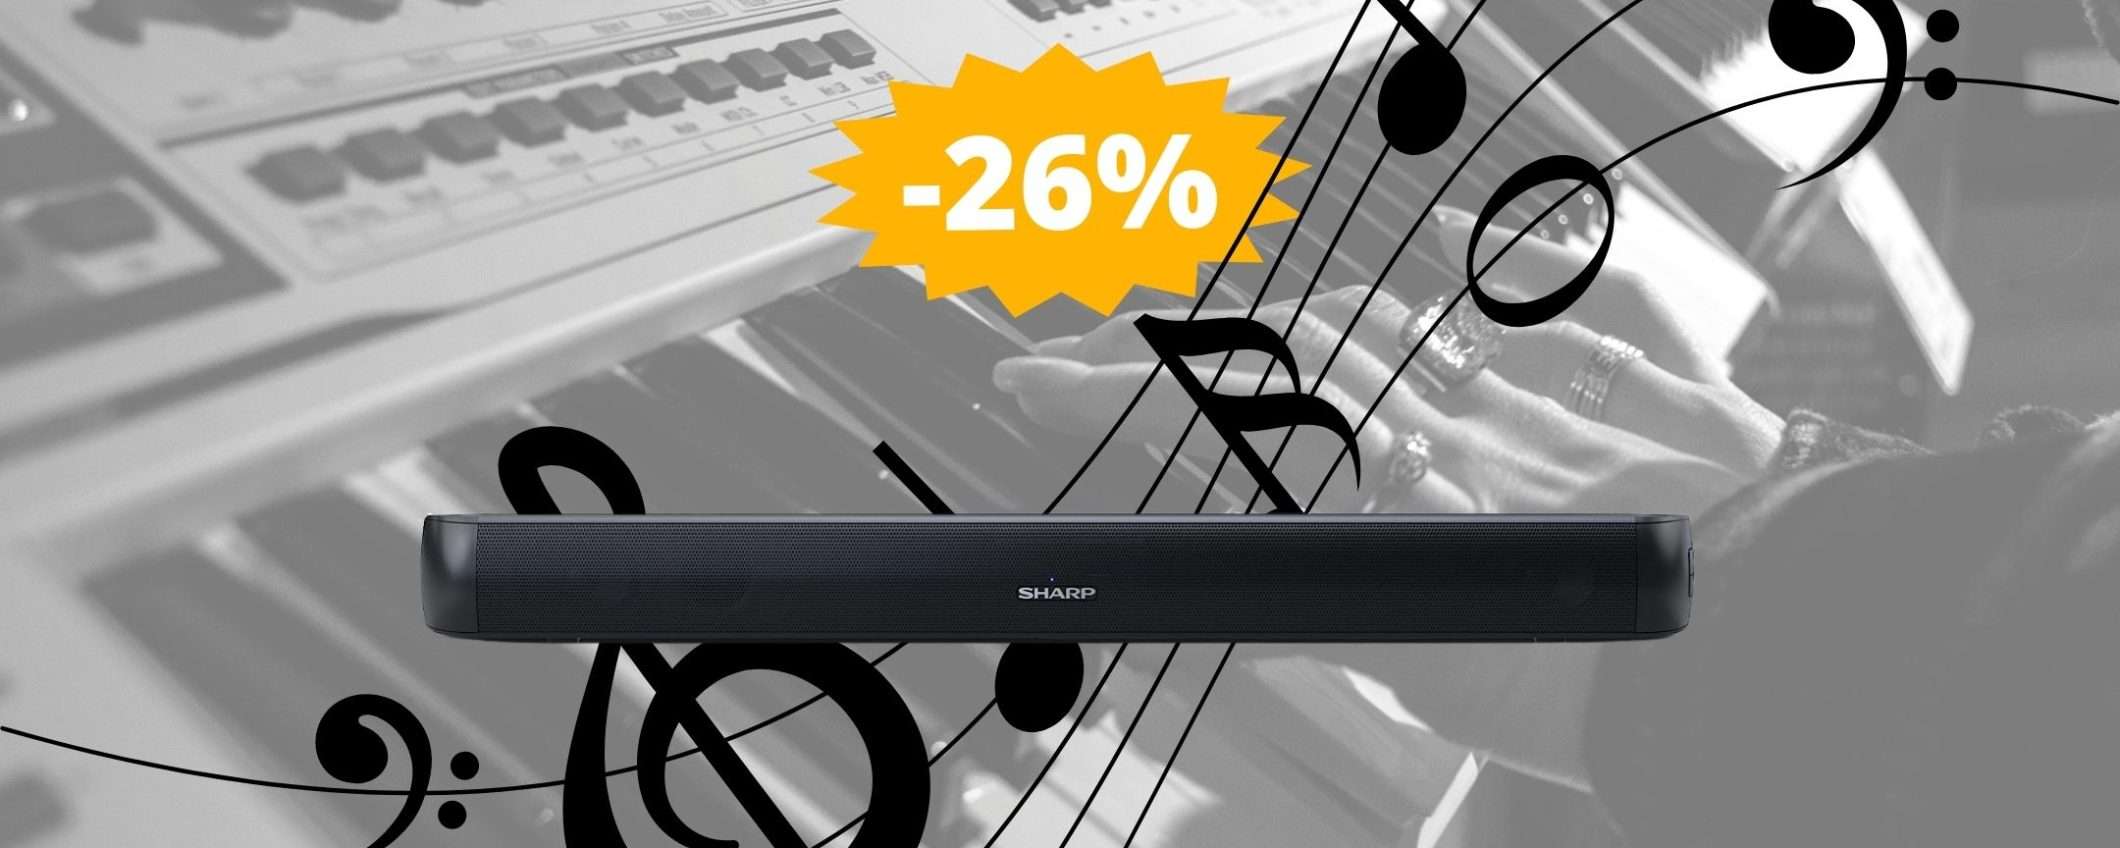 Mini soundbar Sharp: ottima OCCASIONE a questo prezzo (-26%)